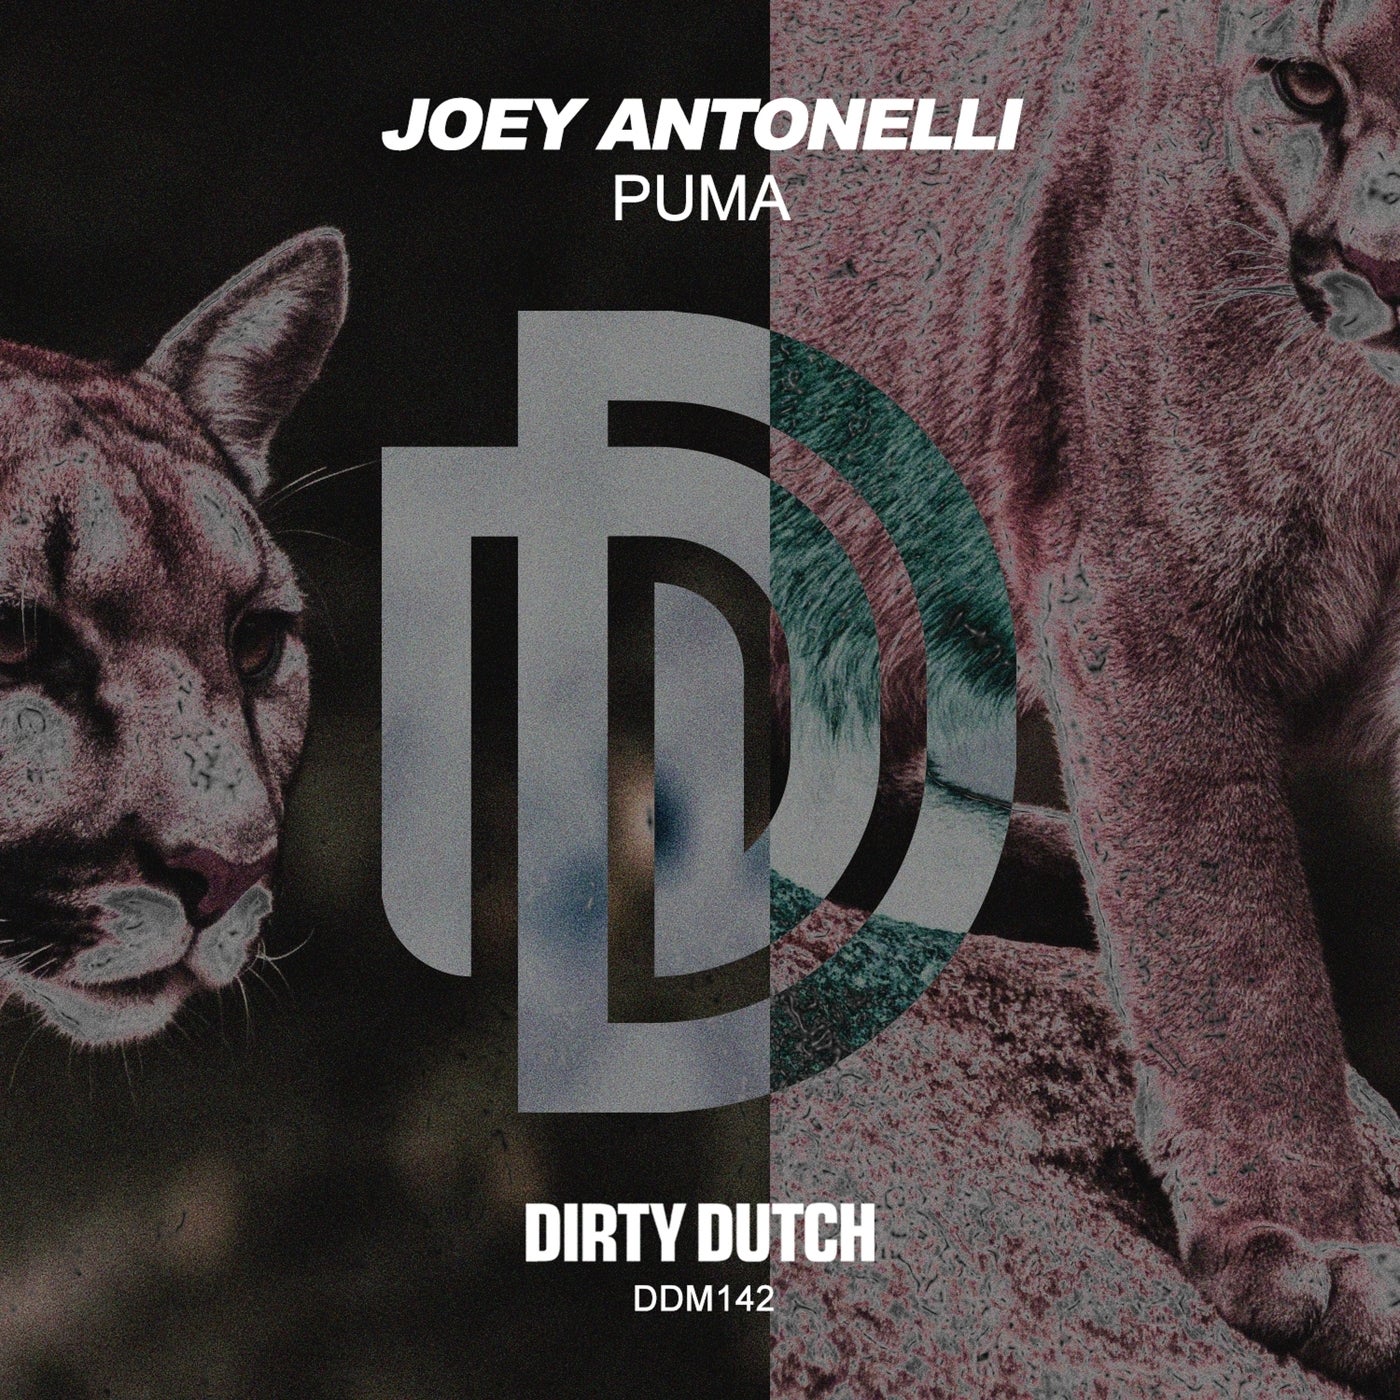 Joey Antonelli - PUMA [DDM142]